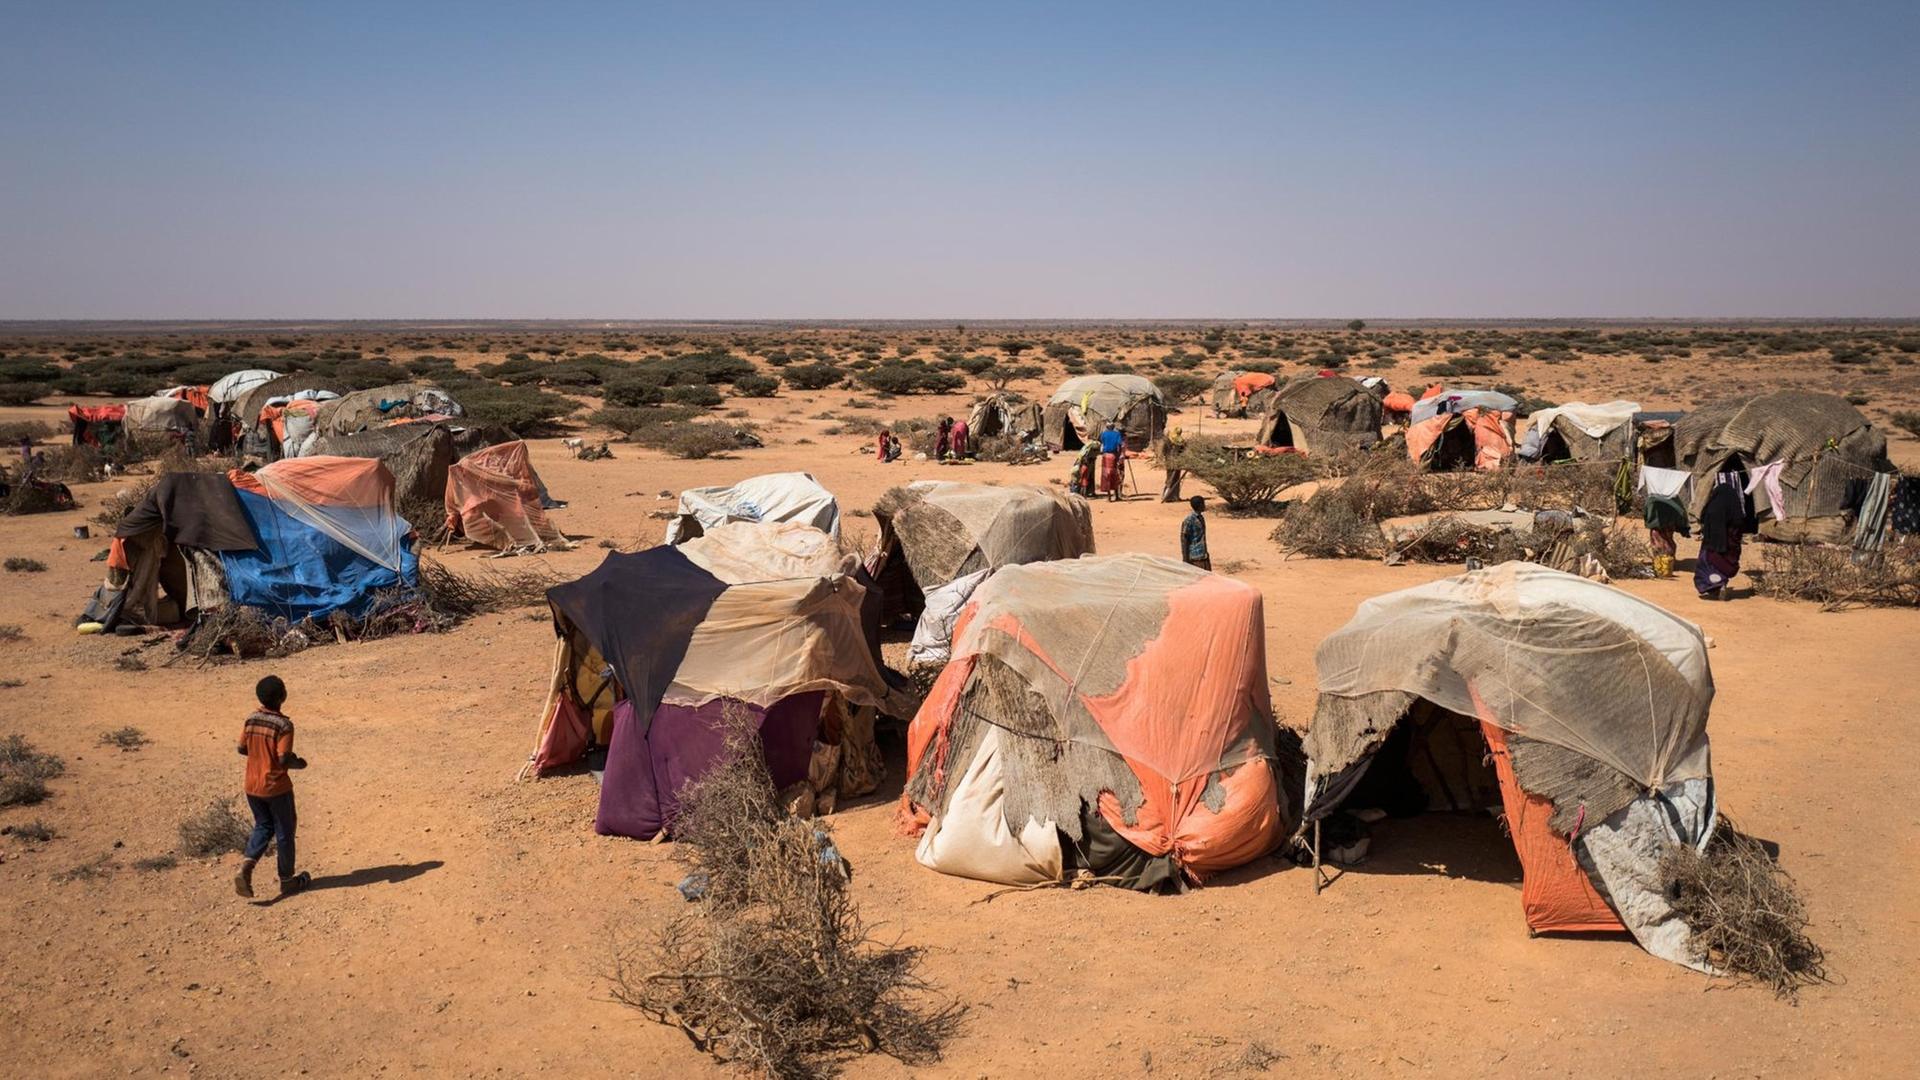 Blick über ein Zeltlager nomadischer Viehhirten in Uusgure, Somalia am 22.02.2017. Aufgrund der anhaltenden Dürre haben sich nomadische Viehhirten am Rande des Dorfes niedergelassen. Viele von ihnen haben ihre Bestände von Ziegen und Kamelen - und damit ihre Lebensgrundlage - verloren.